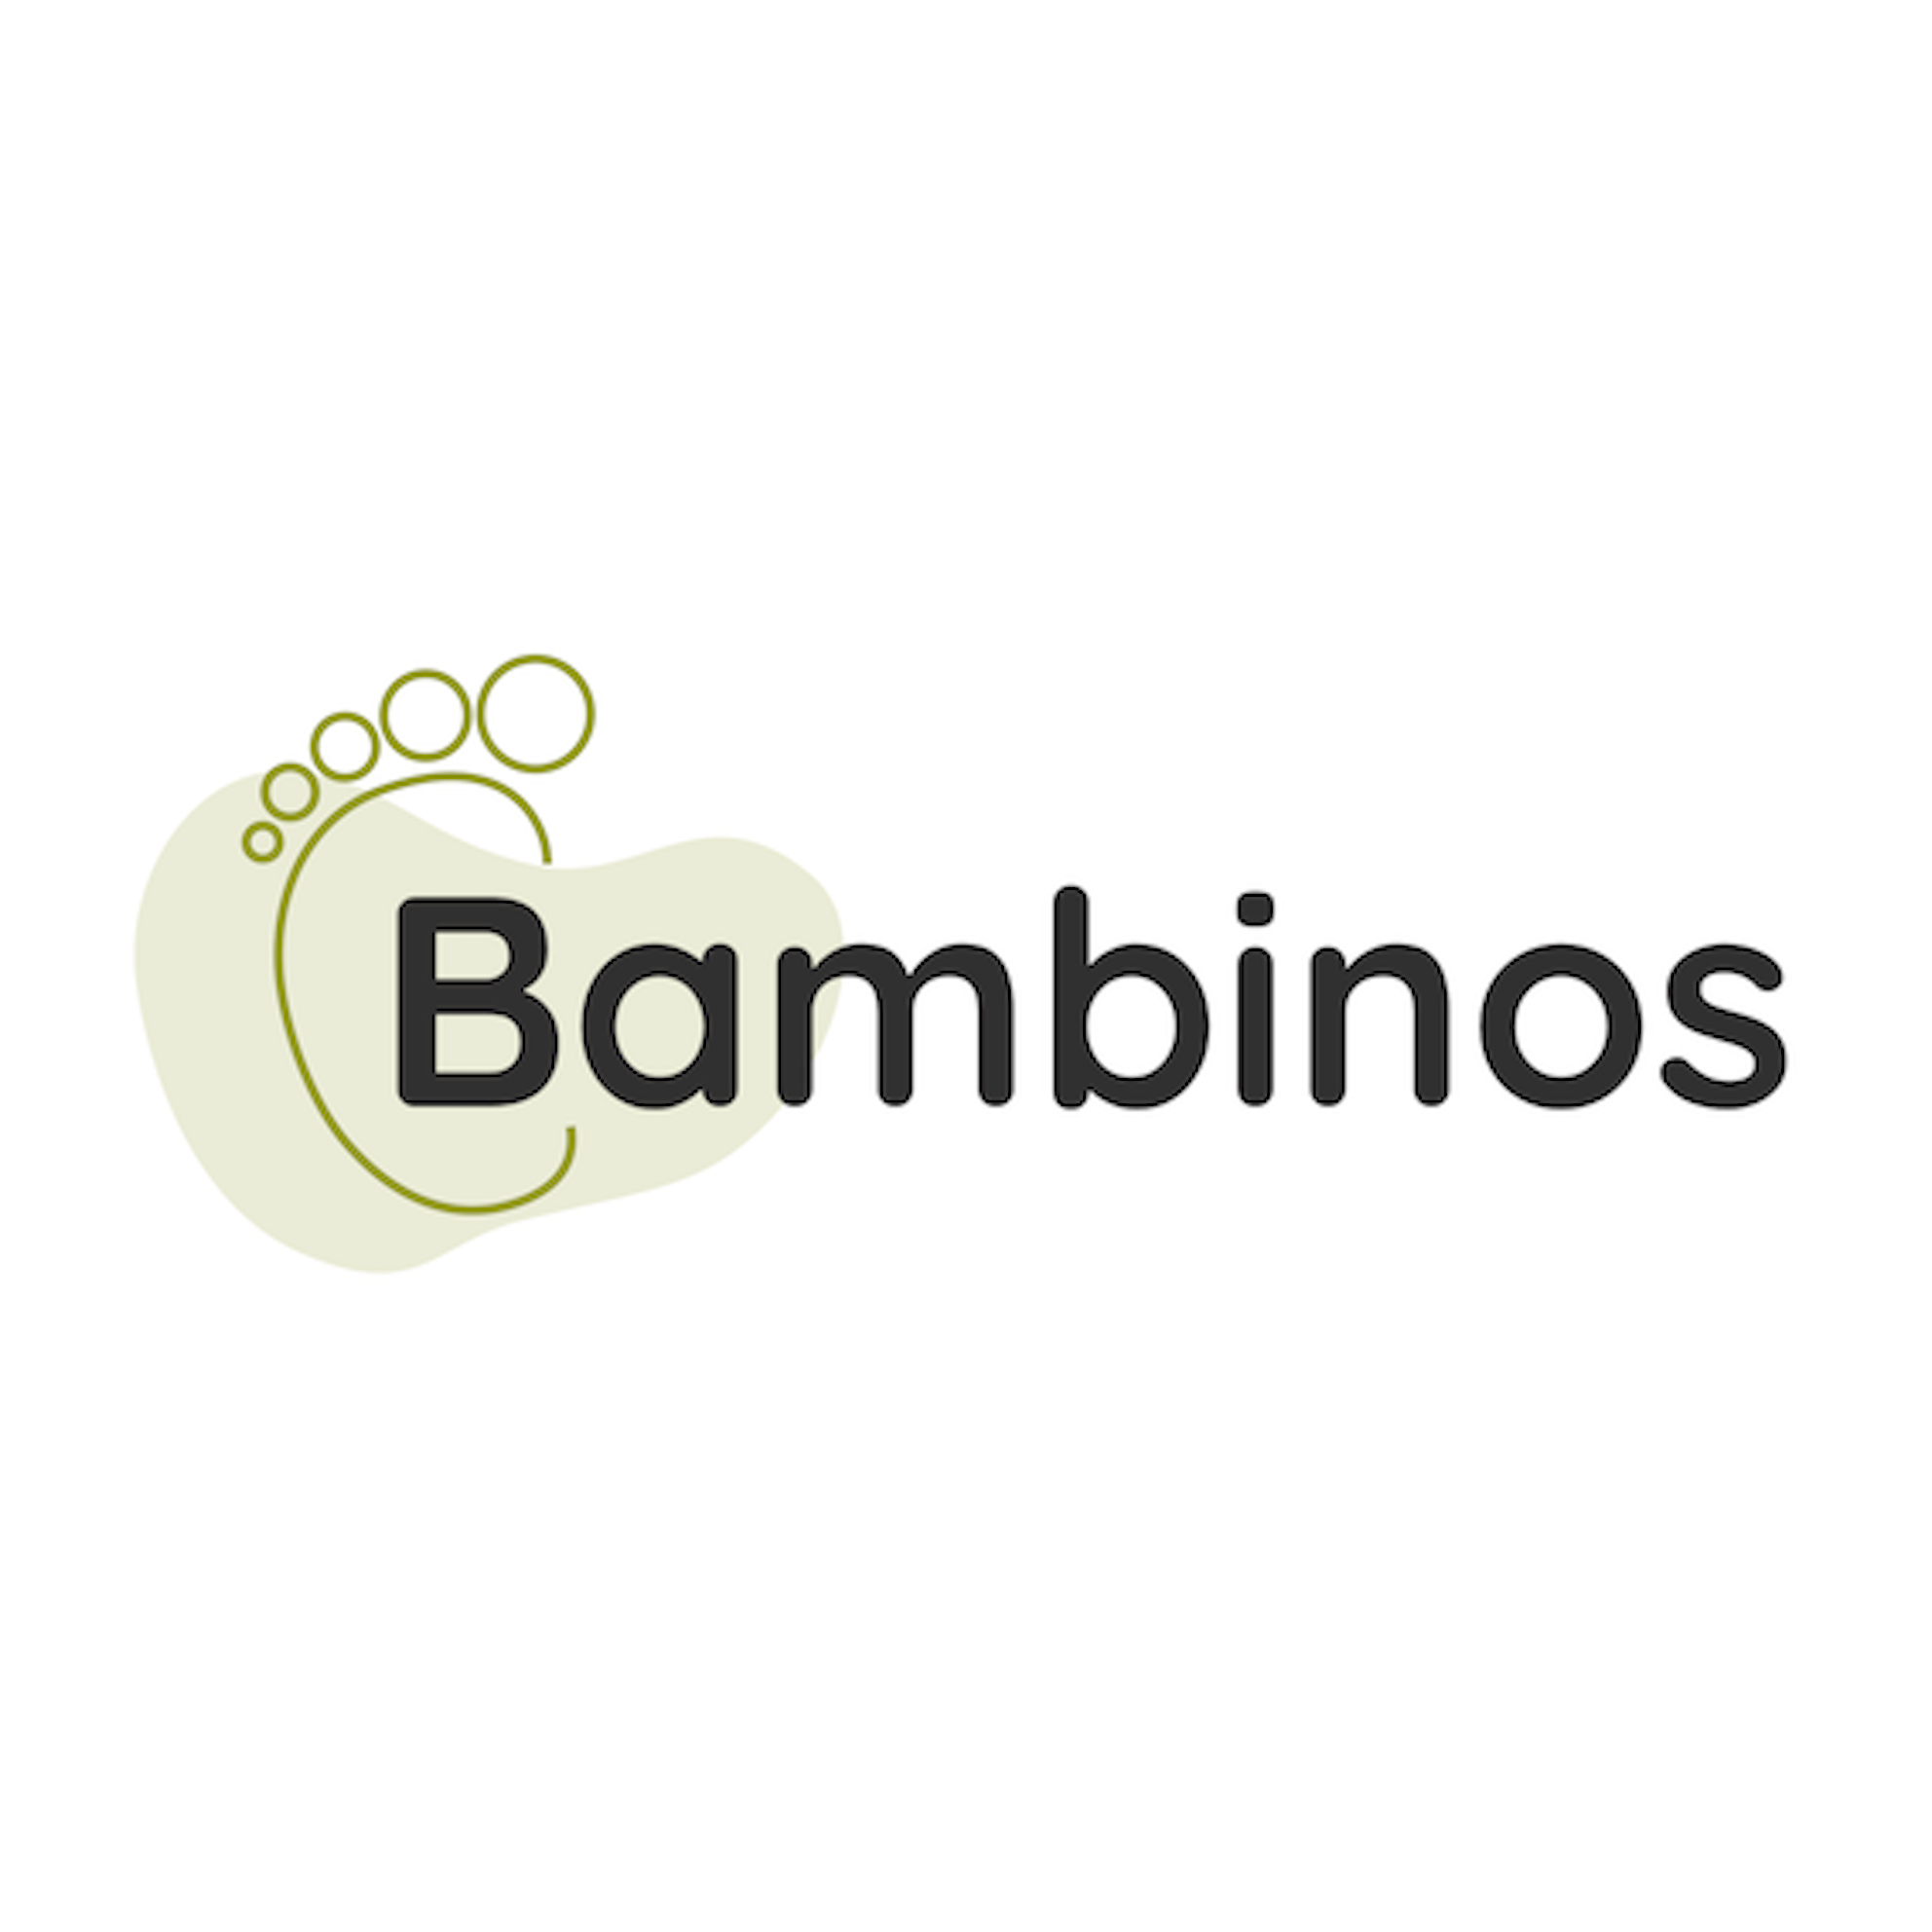 Bambinos 's logo